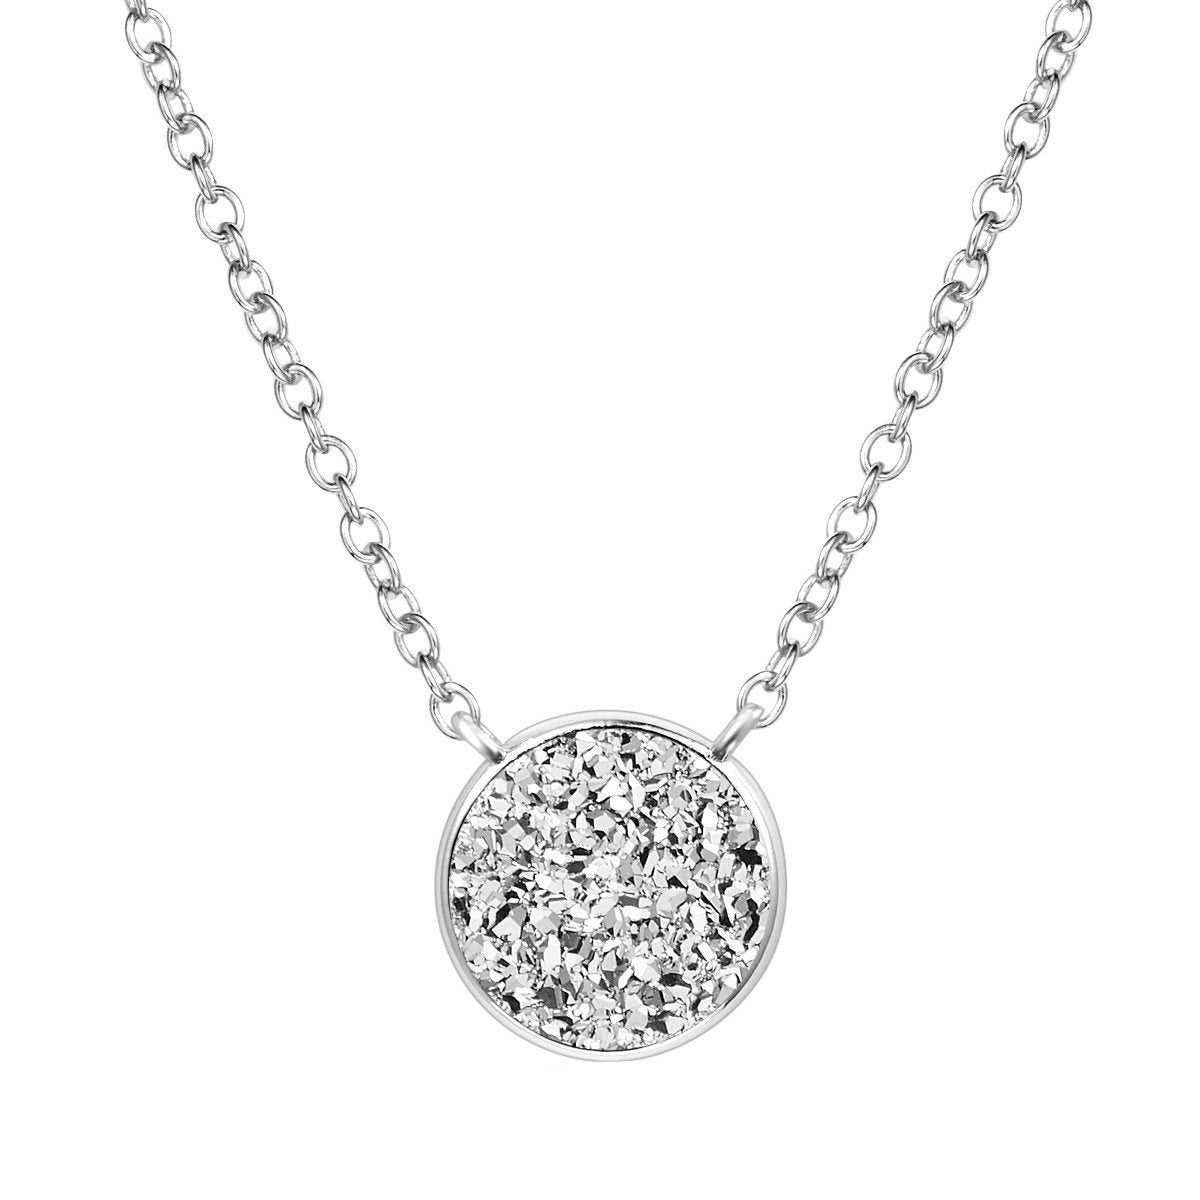 Elara's Silver Necklace